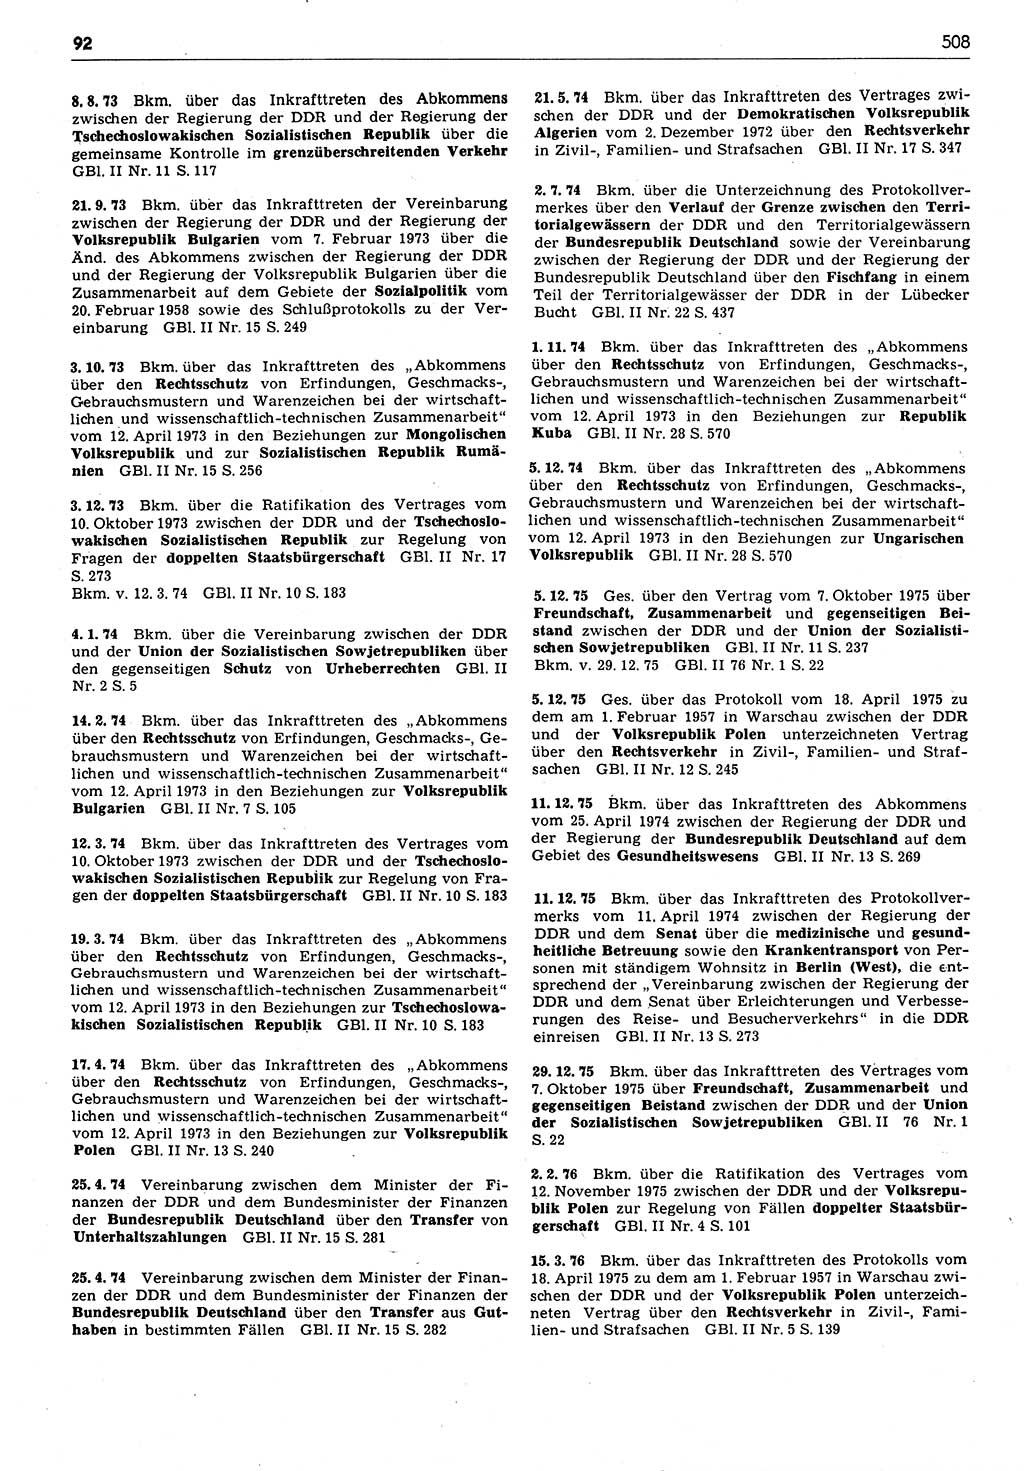 Das geltende Recht der Deutschen Demokratischen Republik (DDR) 1949-1988, Seite 508 (Gelt. R. DDR 1949-1988, S. 508)